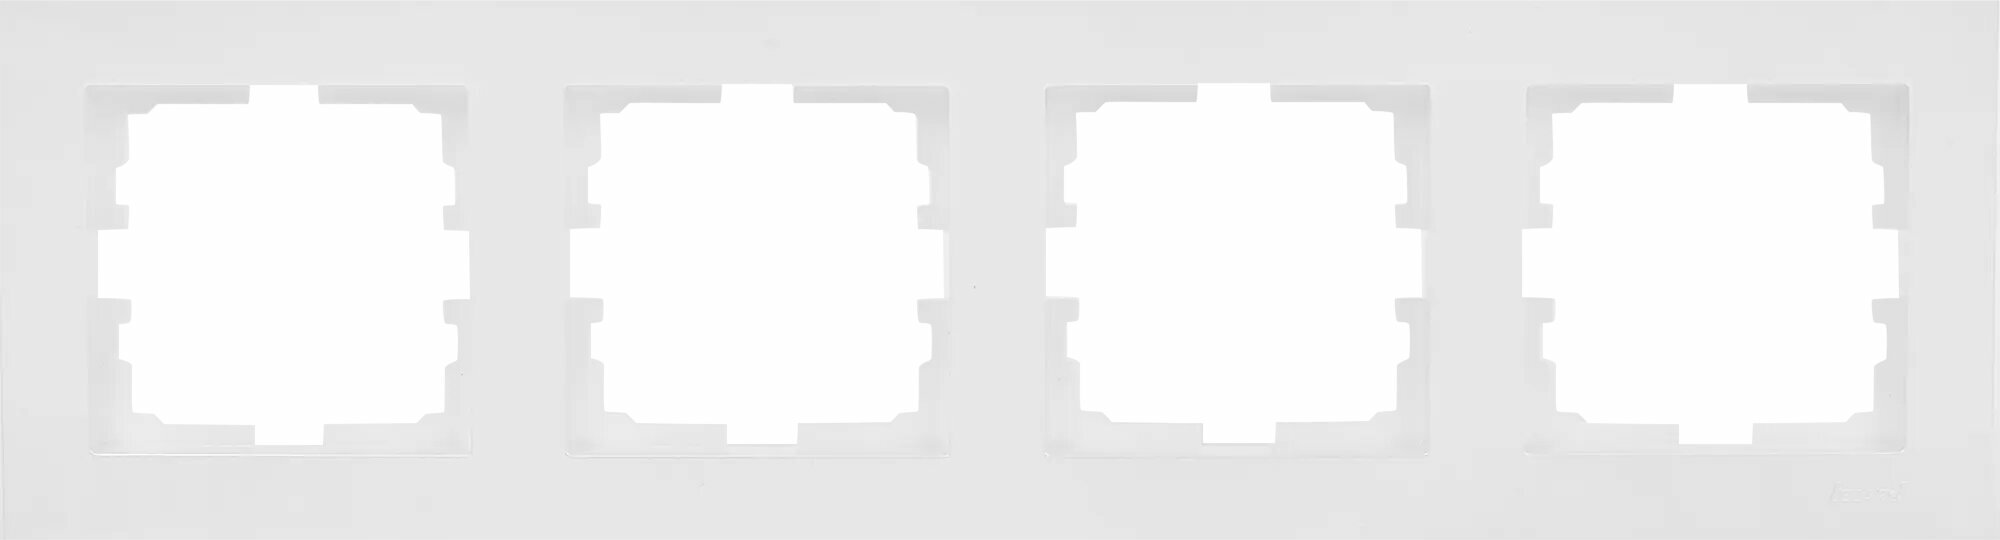 Рамка для розеток и выключателей Lezard Vesna 4 поста горизонтальная цвет белый